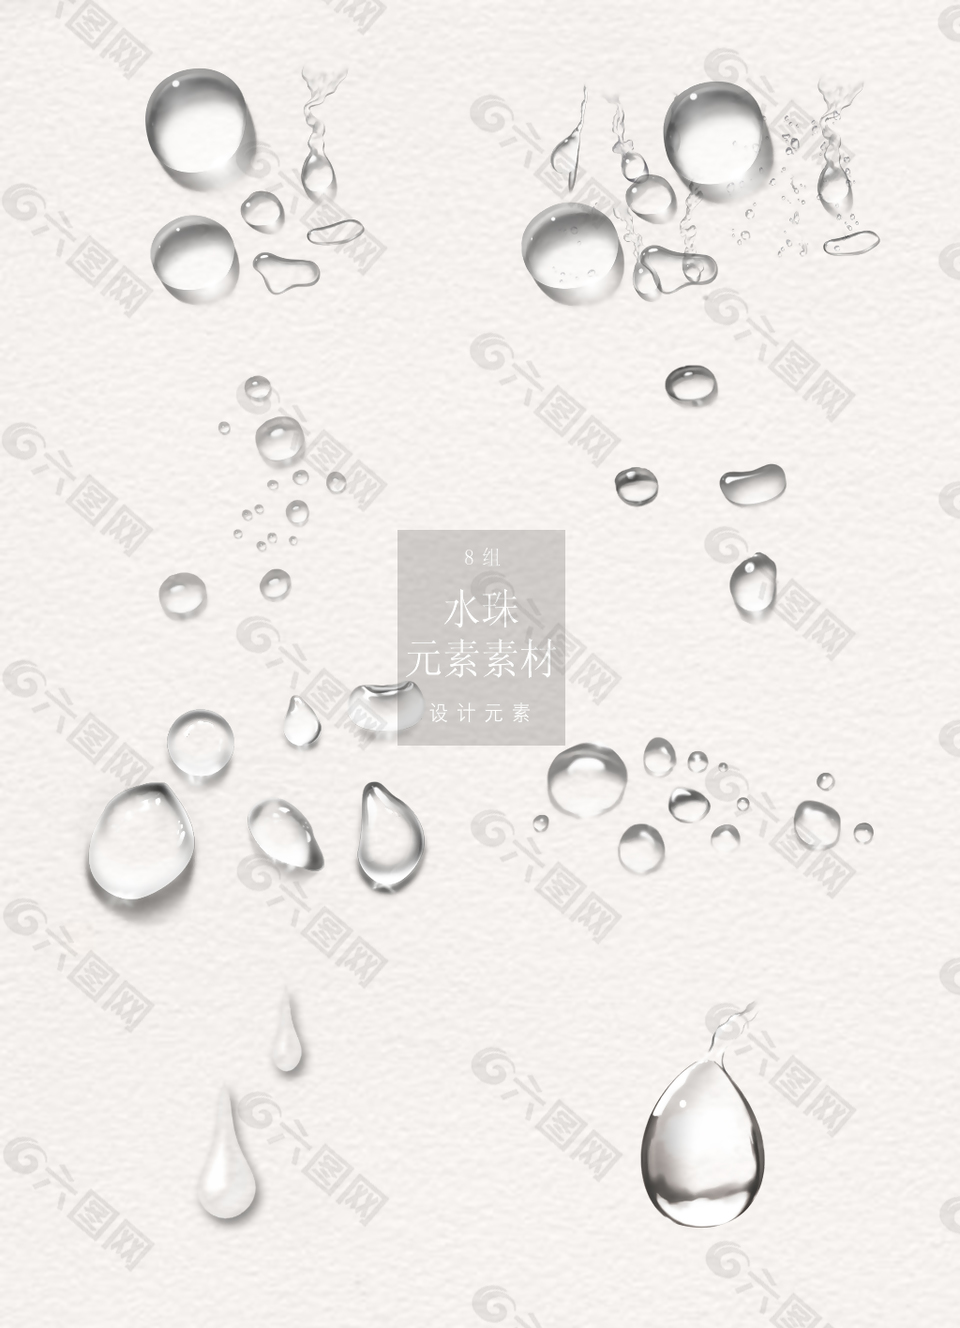 透明的水珠与水滴素材设计元素素材免费下载 图片编号 六图网